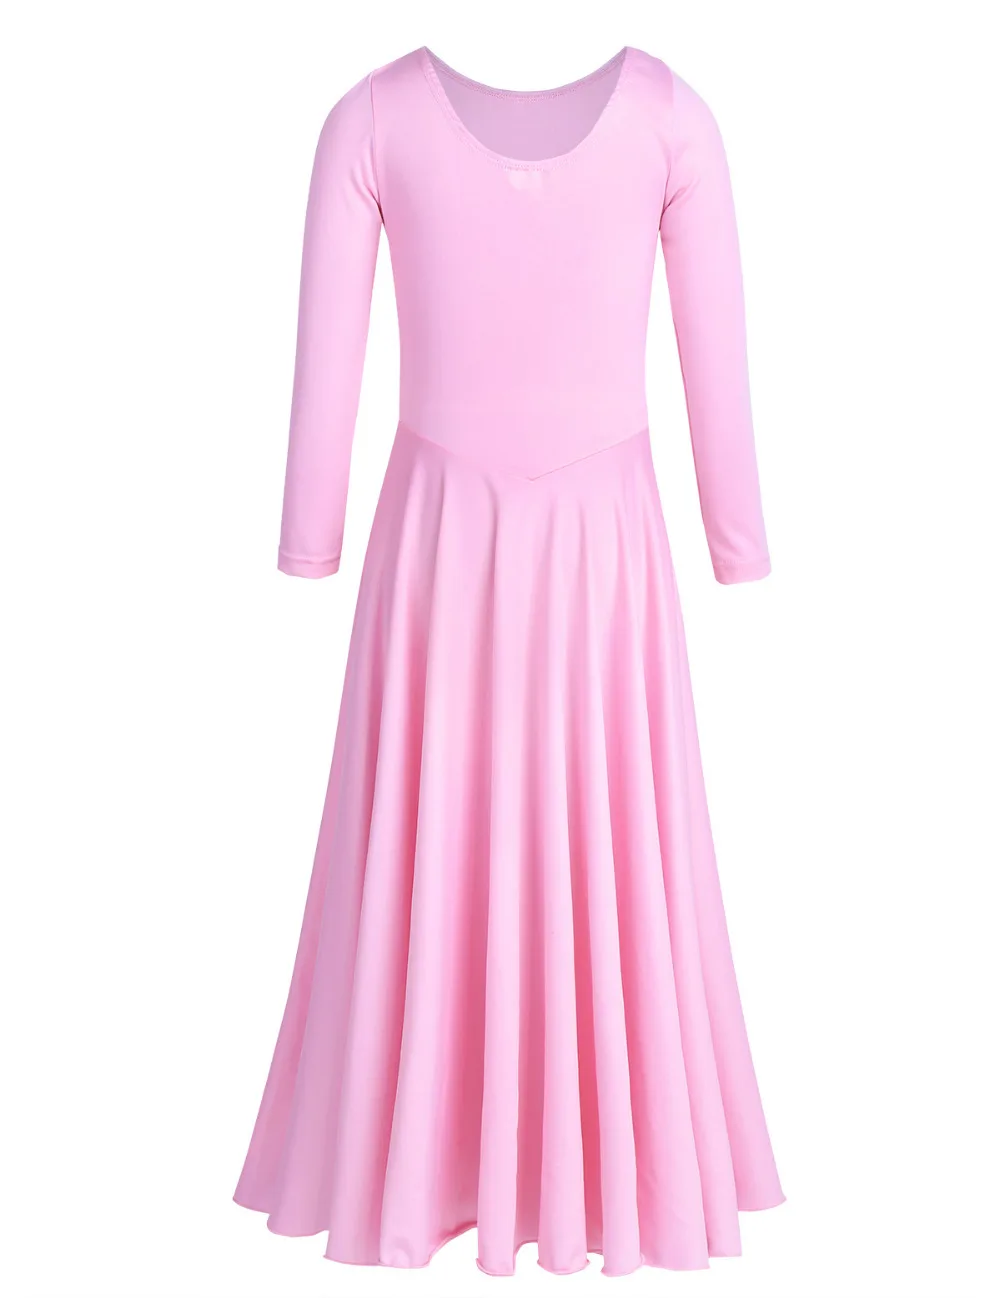 Iiniim/Формальное балетное платье-пачка для девочек; гимнастическое трико для детей; танцевальные костюмы; одежда для литургических танцев